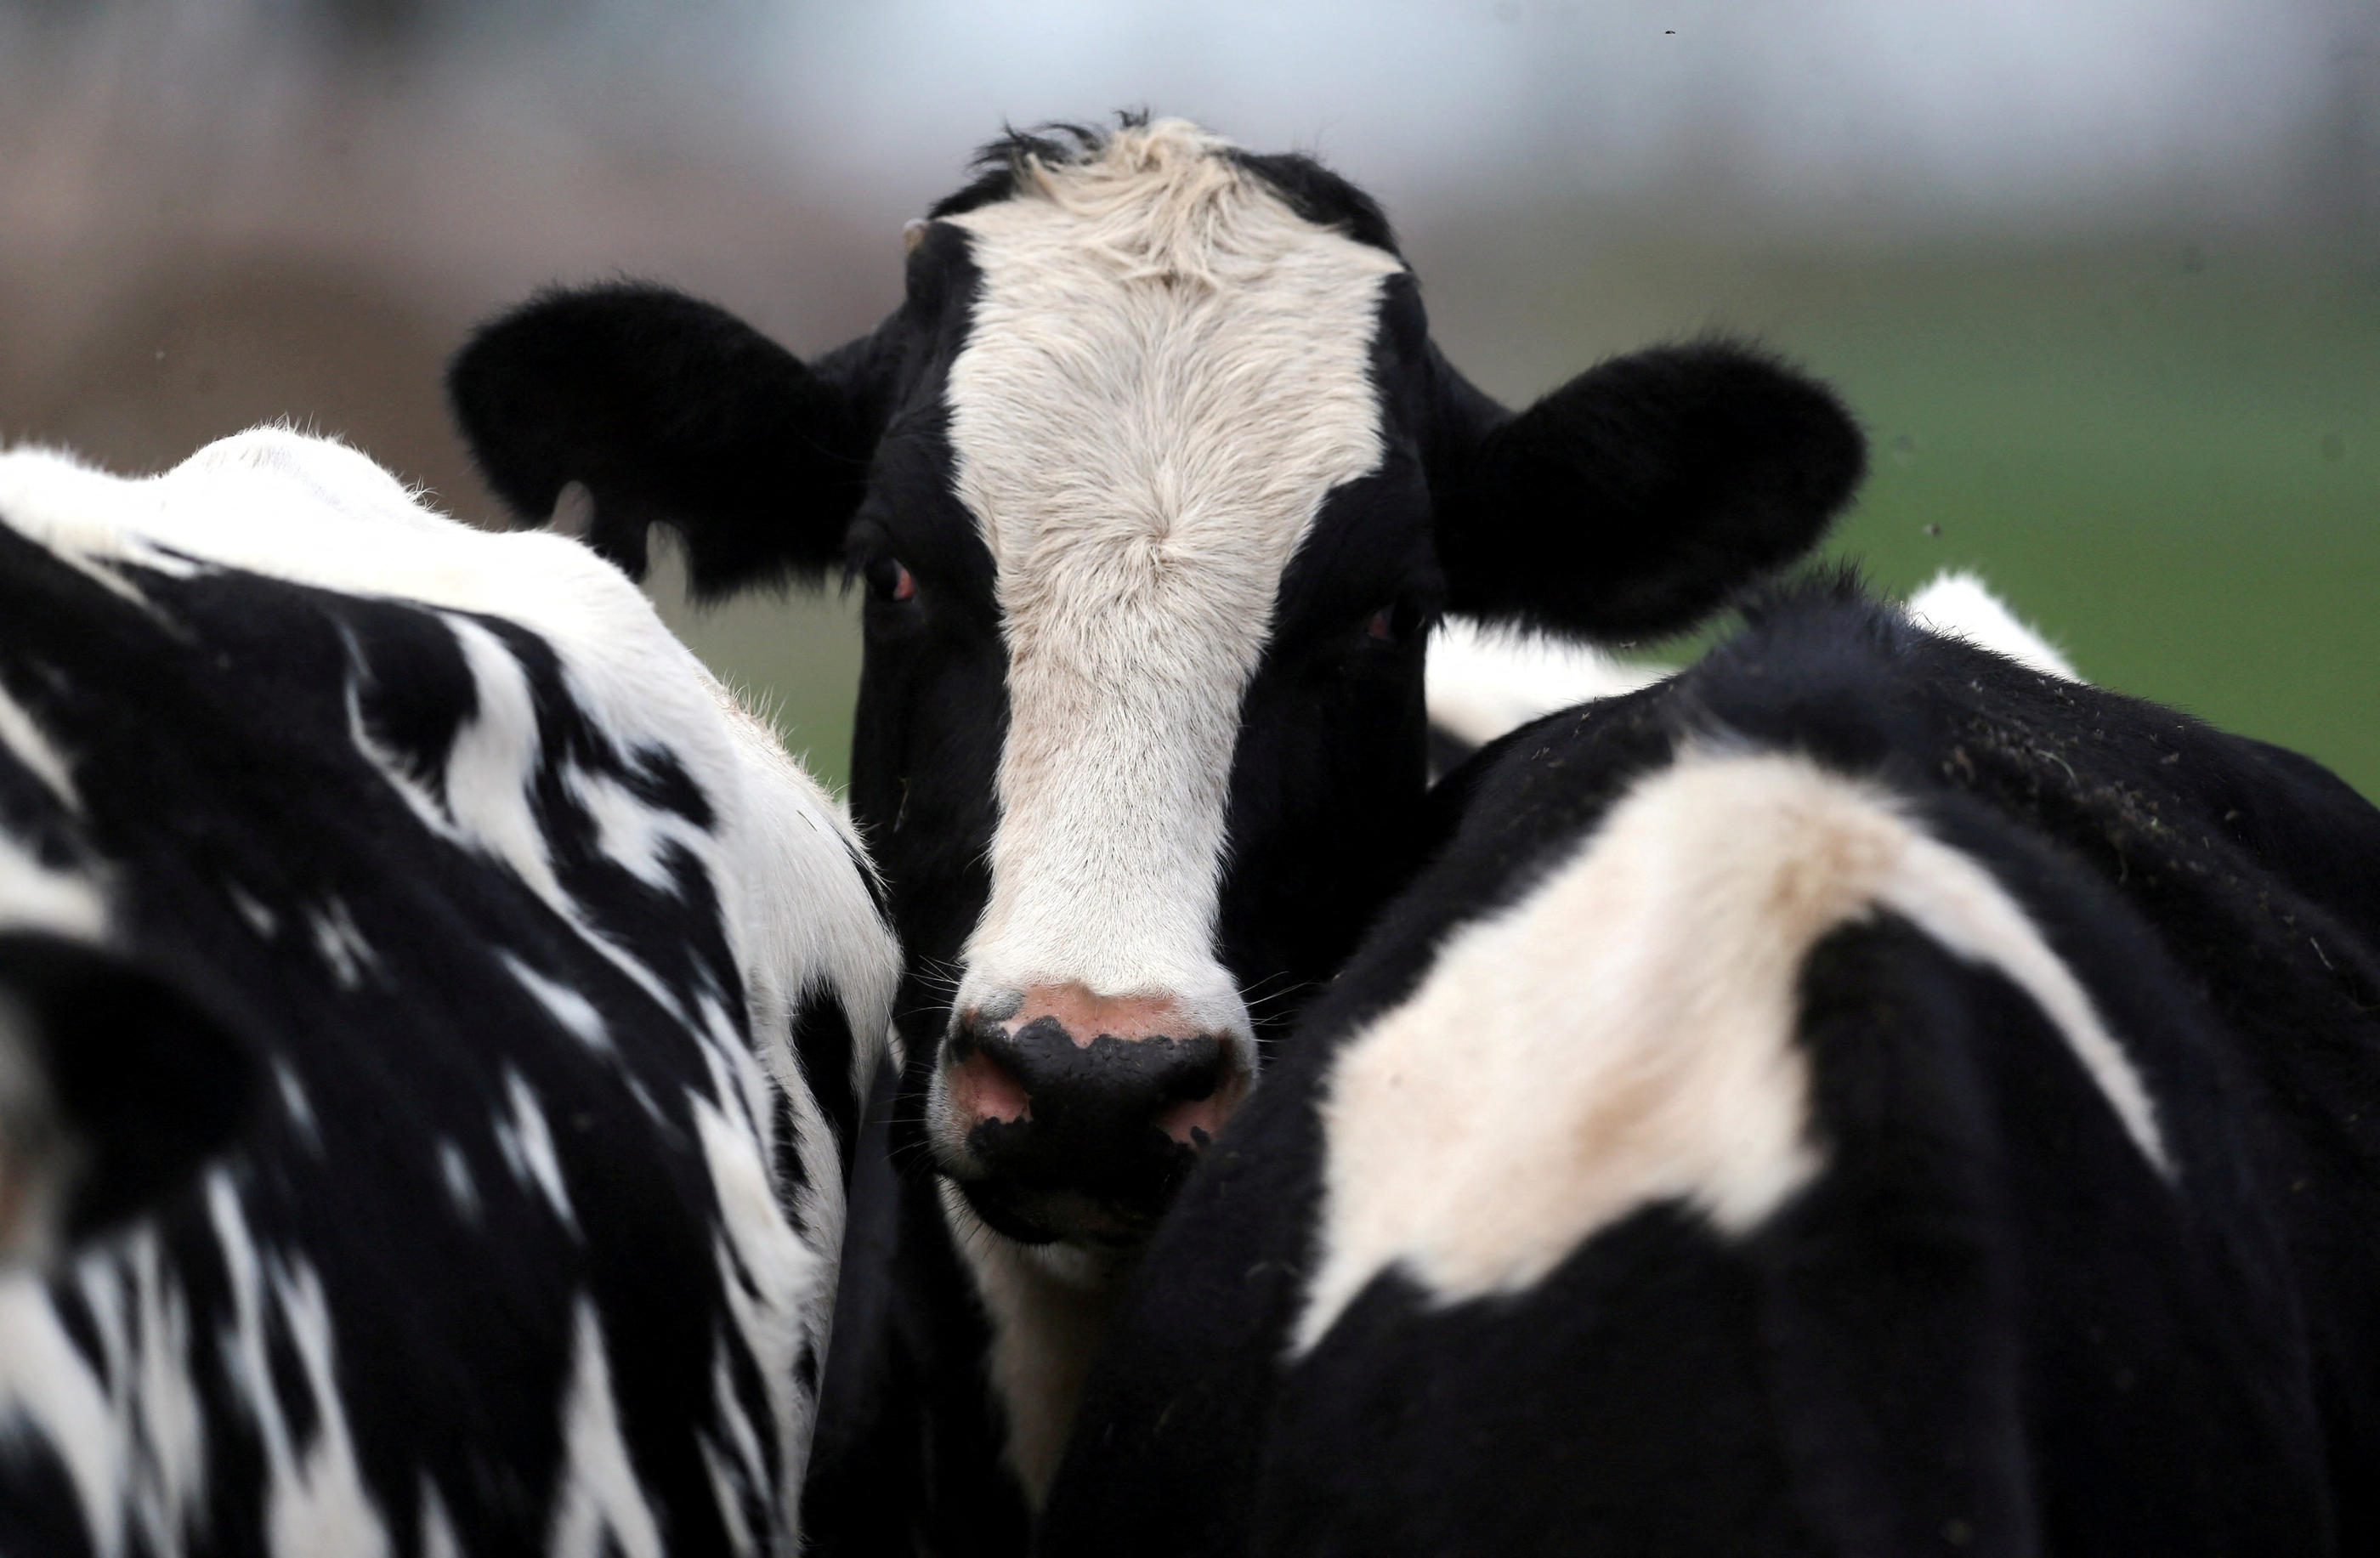 Des troupeaux de vaches sont contaminés aux États-Unis par la grippe aviaire H5N1. Reuters/Marcos Brindicci